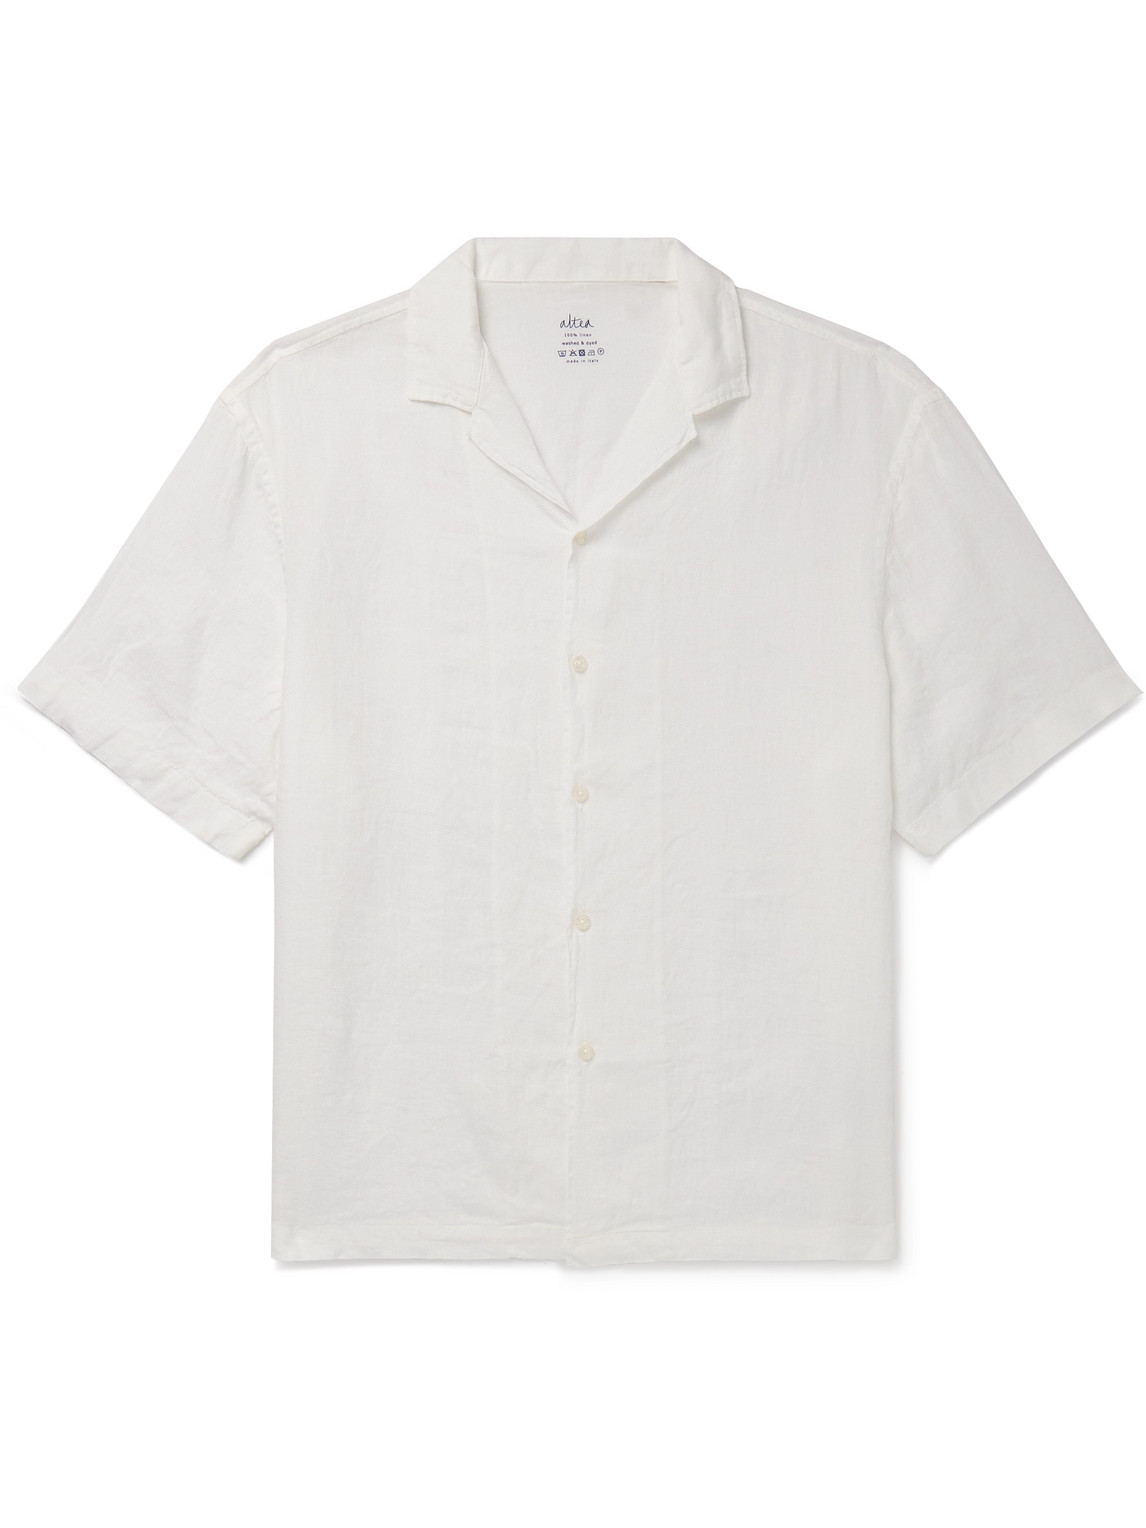 Altea - Bart Camp-Collar Garment-Dyed Linen Shirt - Men - White - S von Altea